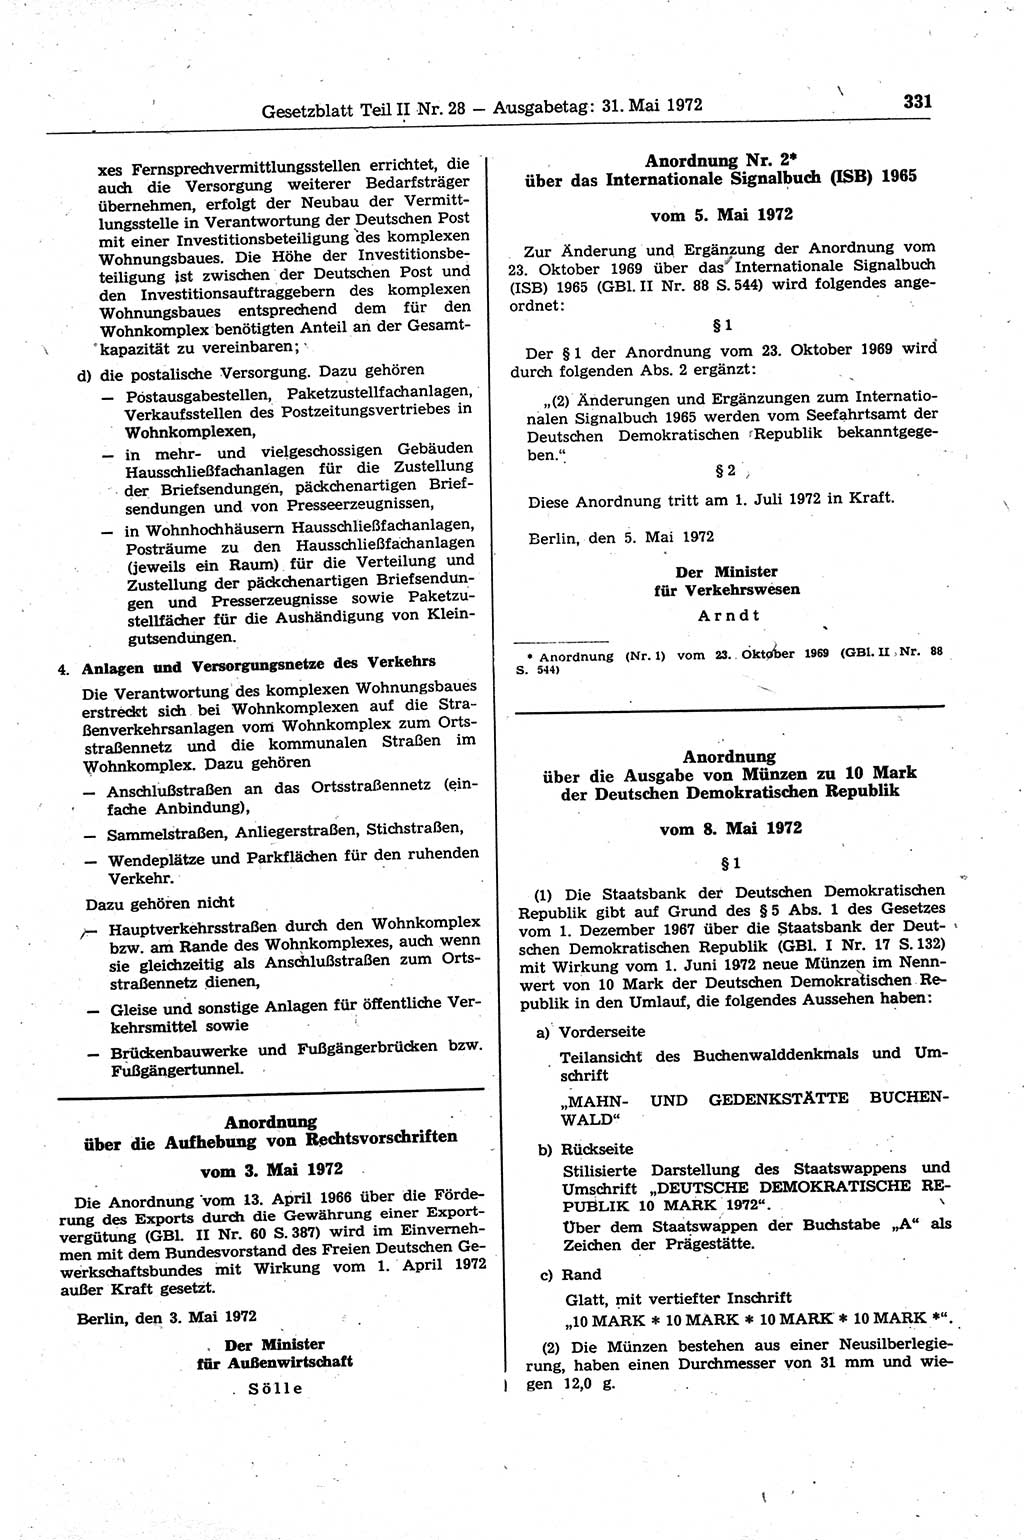 Gesetzblatt (GBl.) der Deutschen Demokratischen Republik (DDR) Teil ⅠⅠ 1972, Seite 331 (GBl. DDR ⅠⅠ 1972, S. 331)